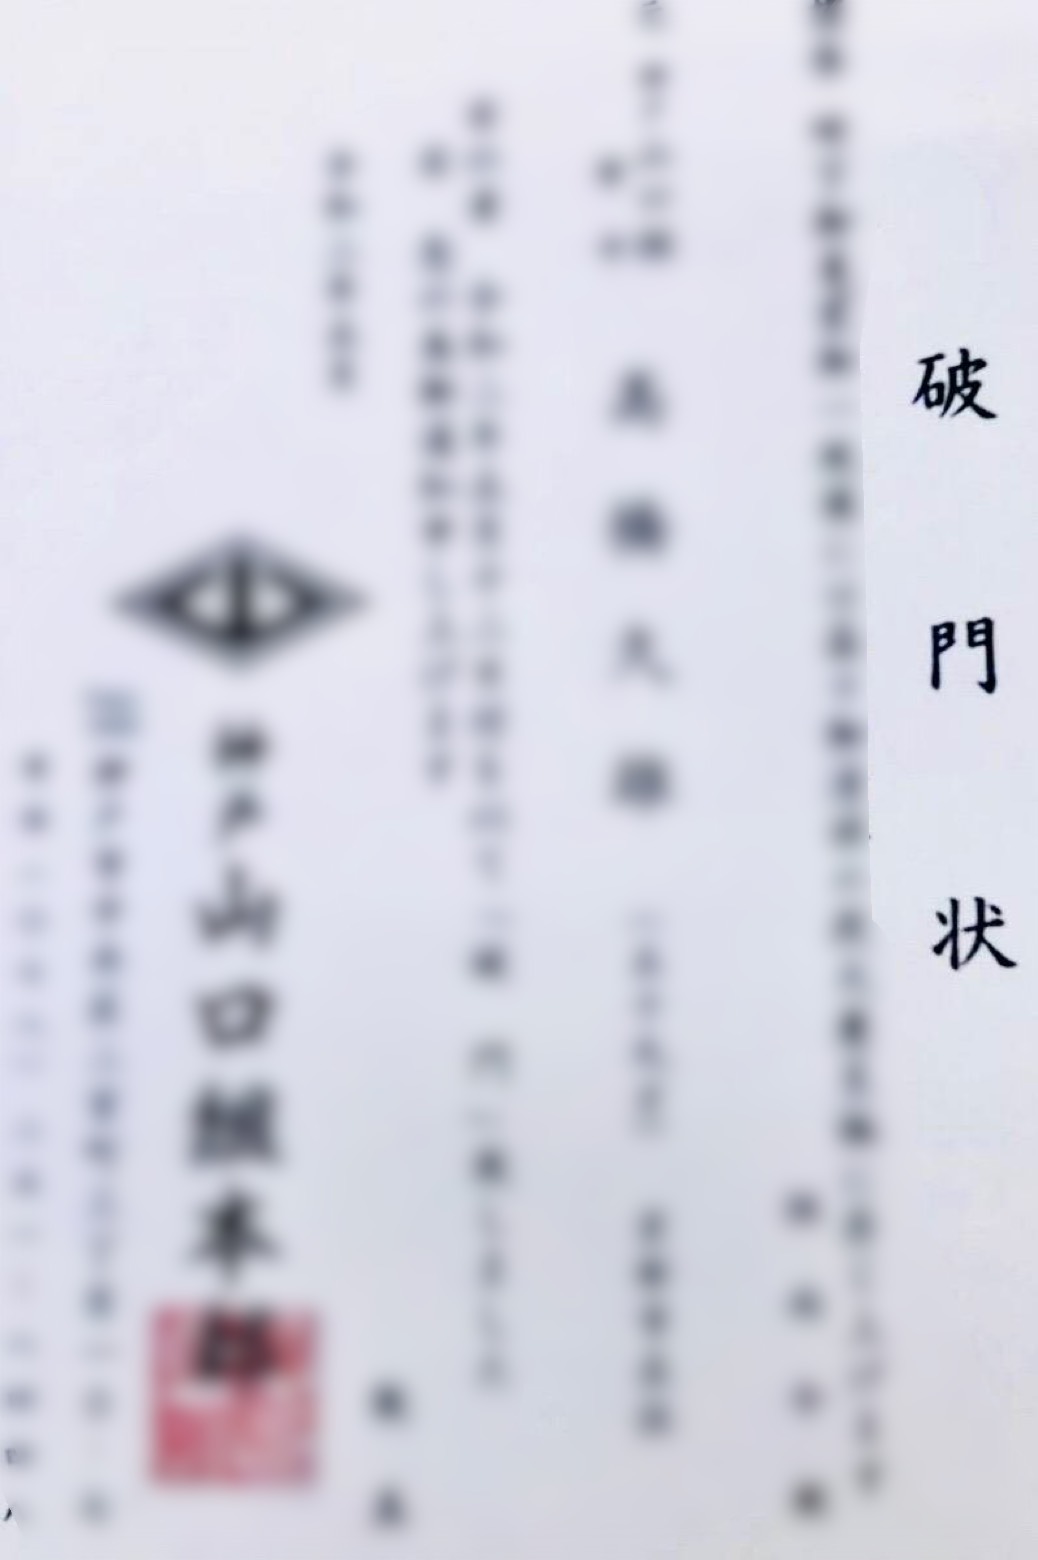 神戸山口組幹部が立て続けに引退、某独立組織は六代目山口組に接近の噂…異変は何を意味する？の画像1